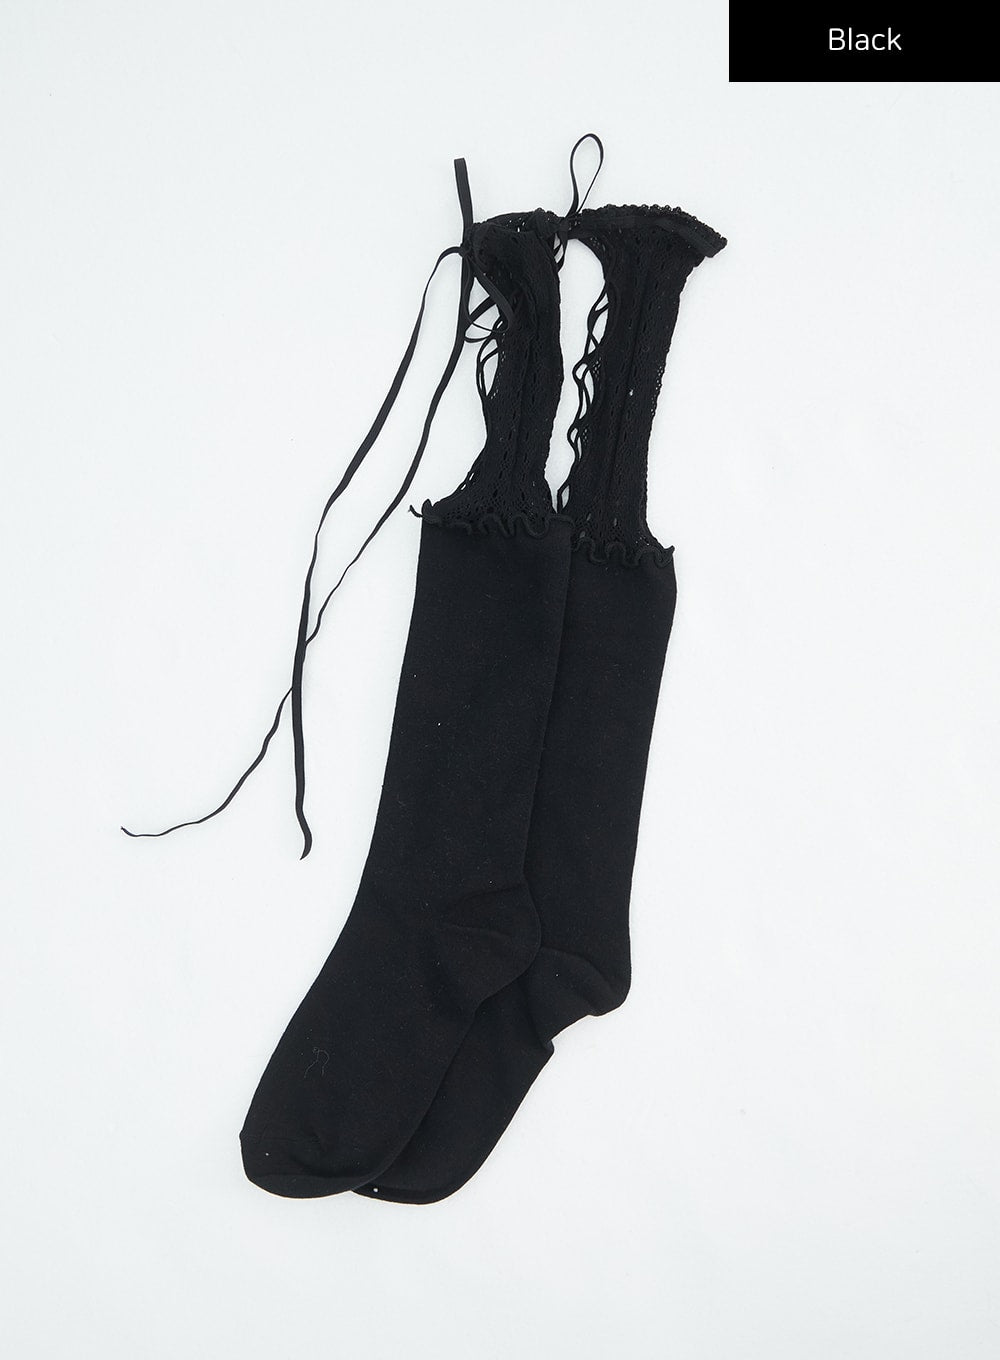 mesh-knit-layered-socks-in316 / Black